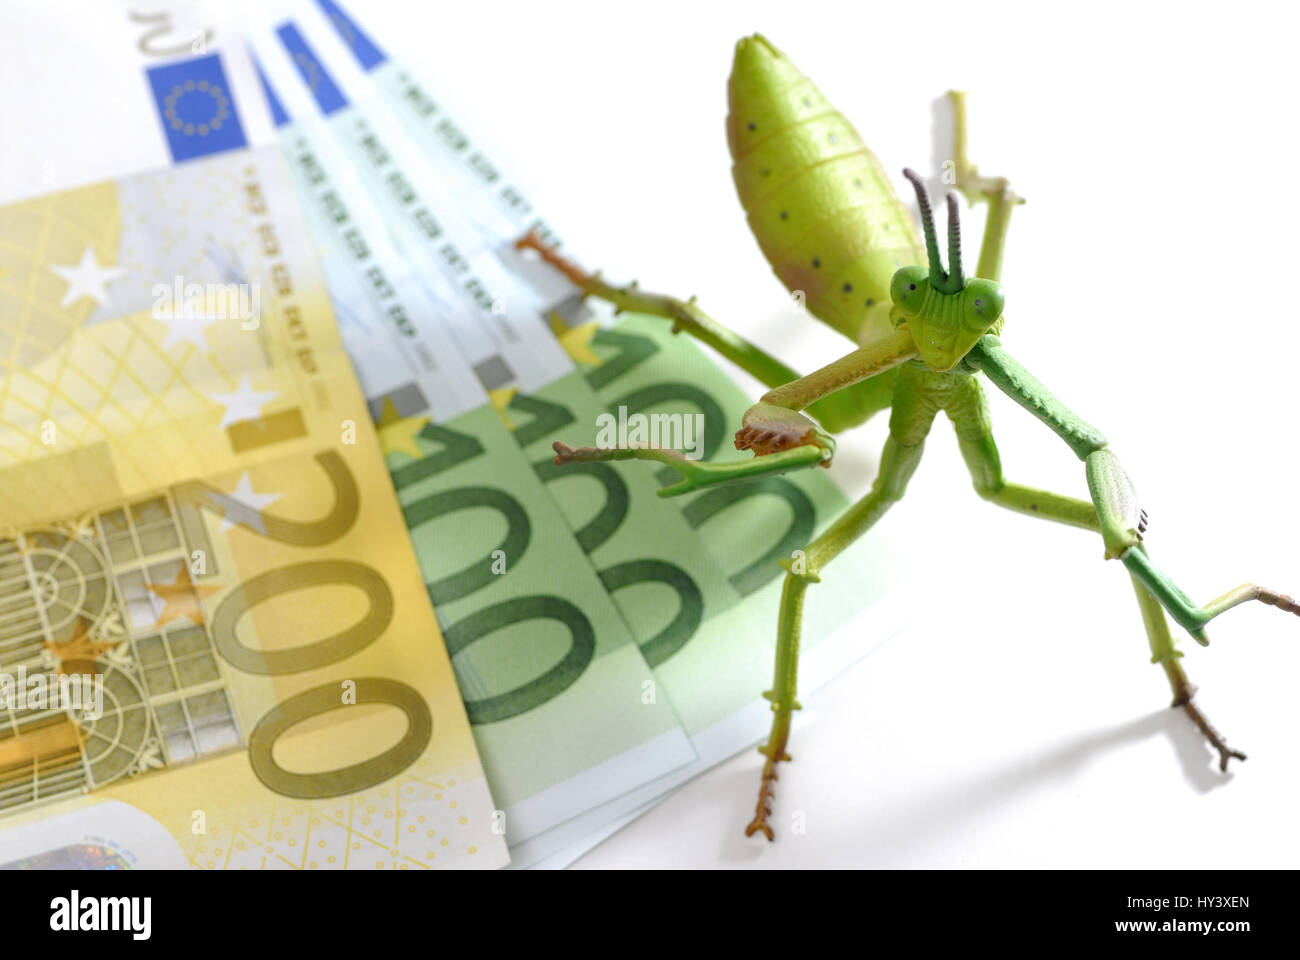 Grasshopper sulle banconote, hedge fund, Heuschrecke auf Geldscheinen, Hedge-Fonds Foto Stock